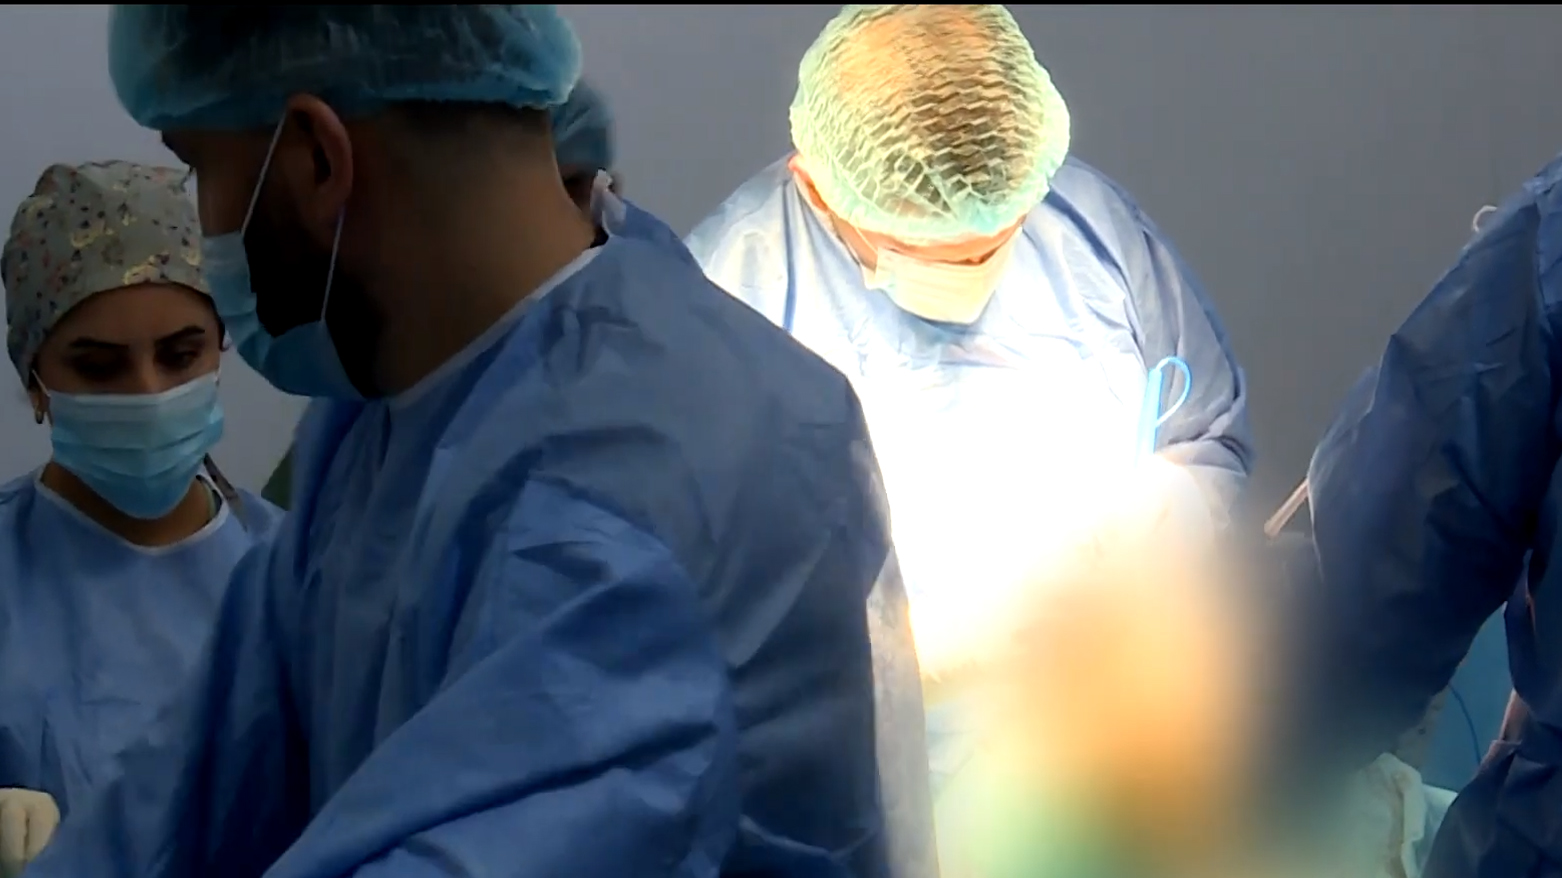 پزشکان در حال انجام عمل جراحی تعویض مفصل در بیمارستان پیشمرگ